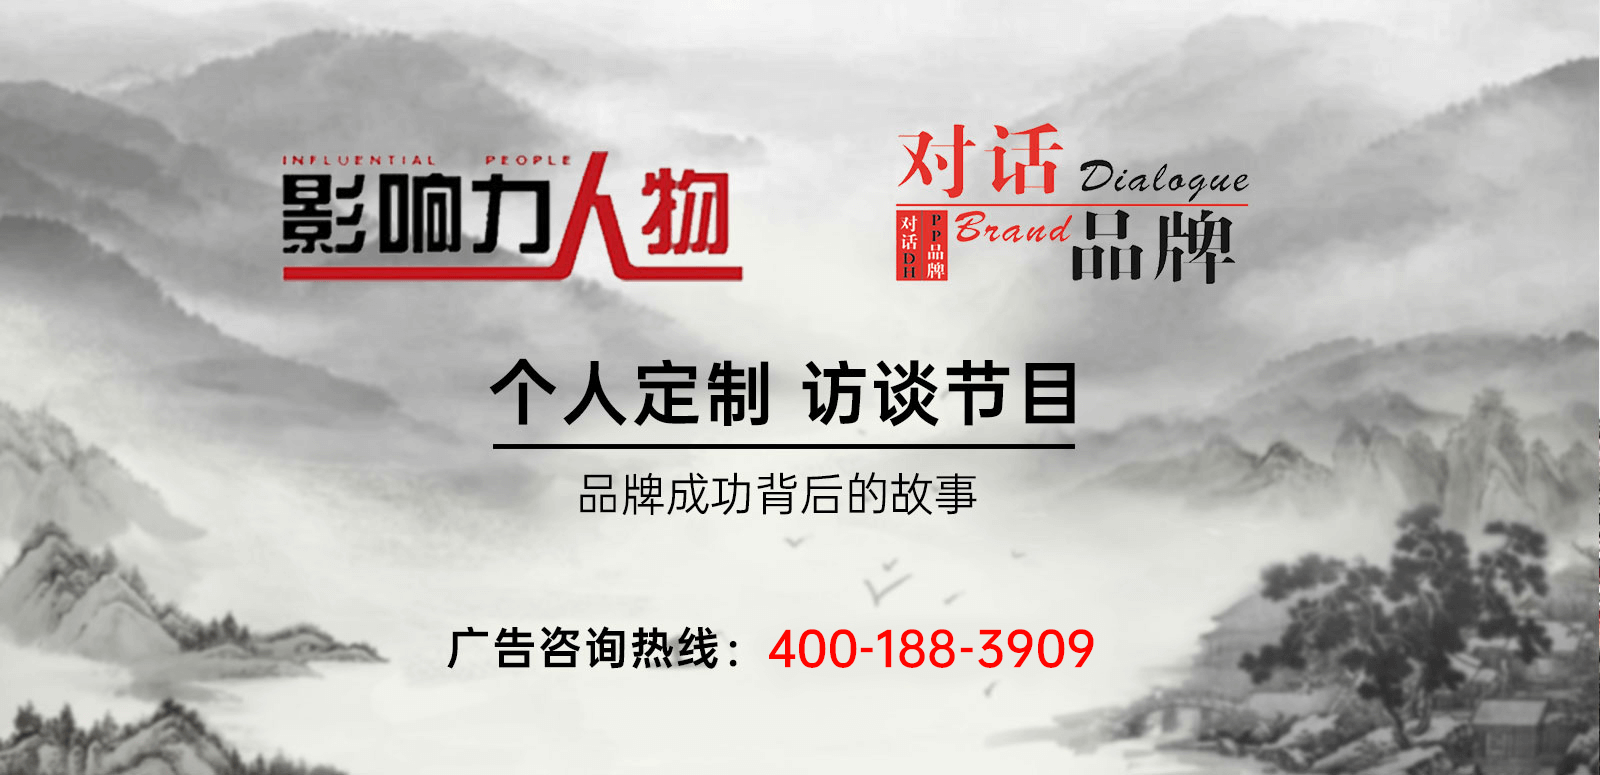 《影响力人物》广告植入,广东今视广告投放免费咨询电话：400-158-3088.